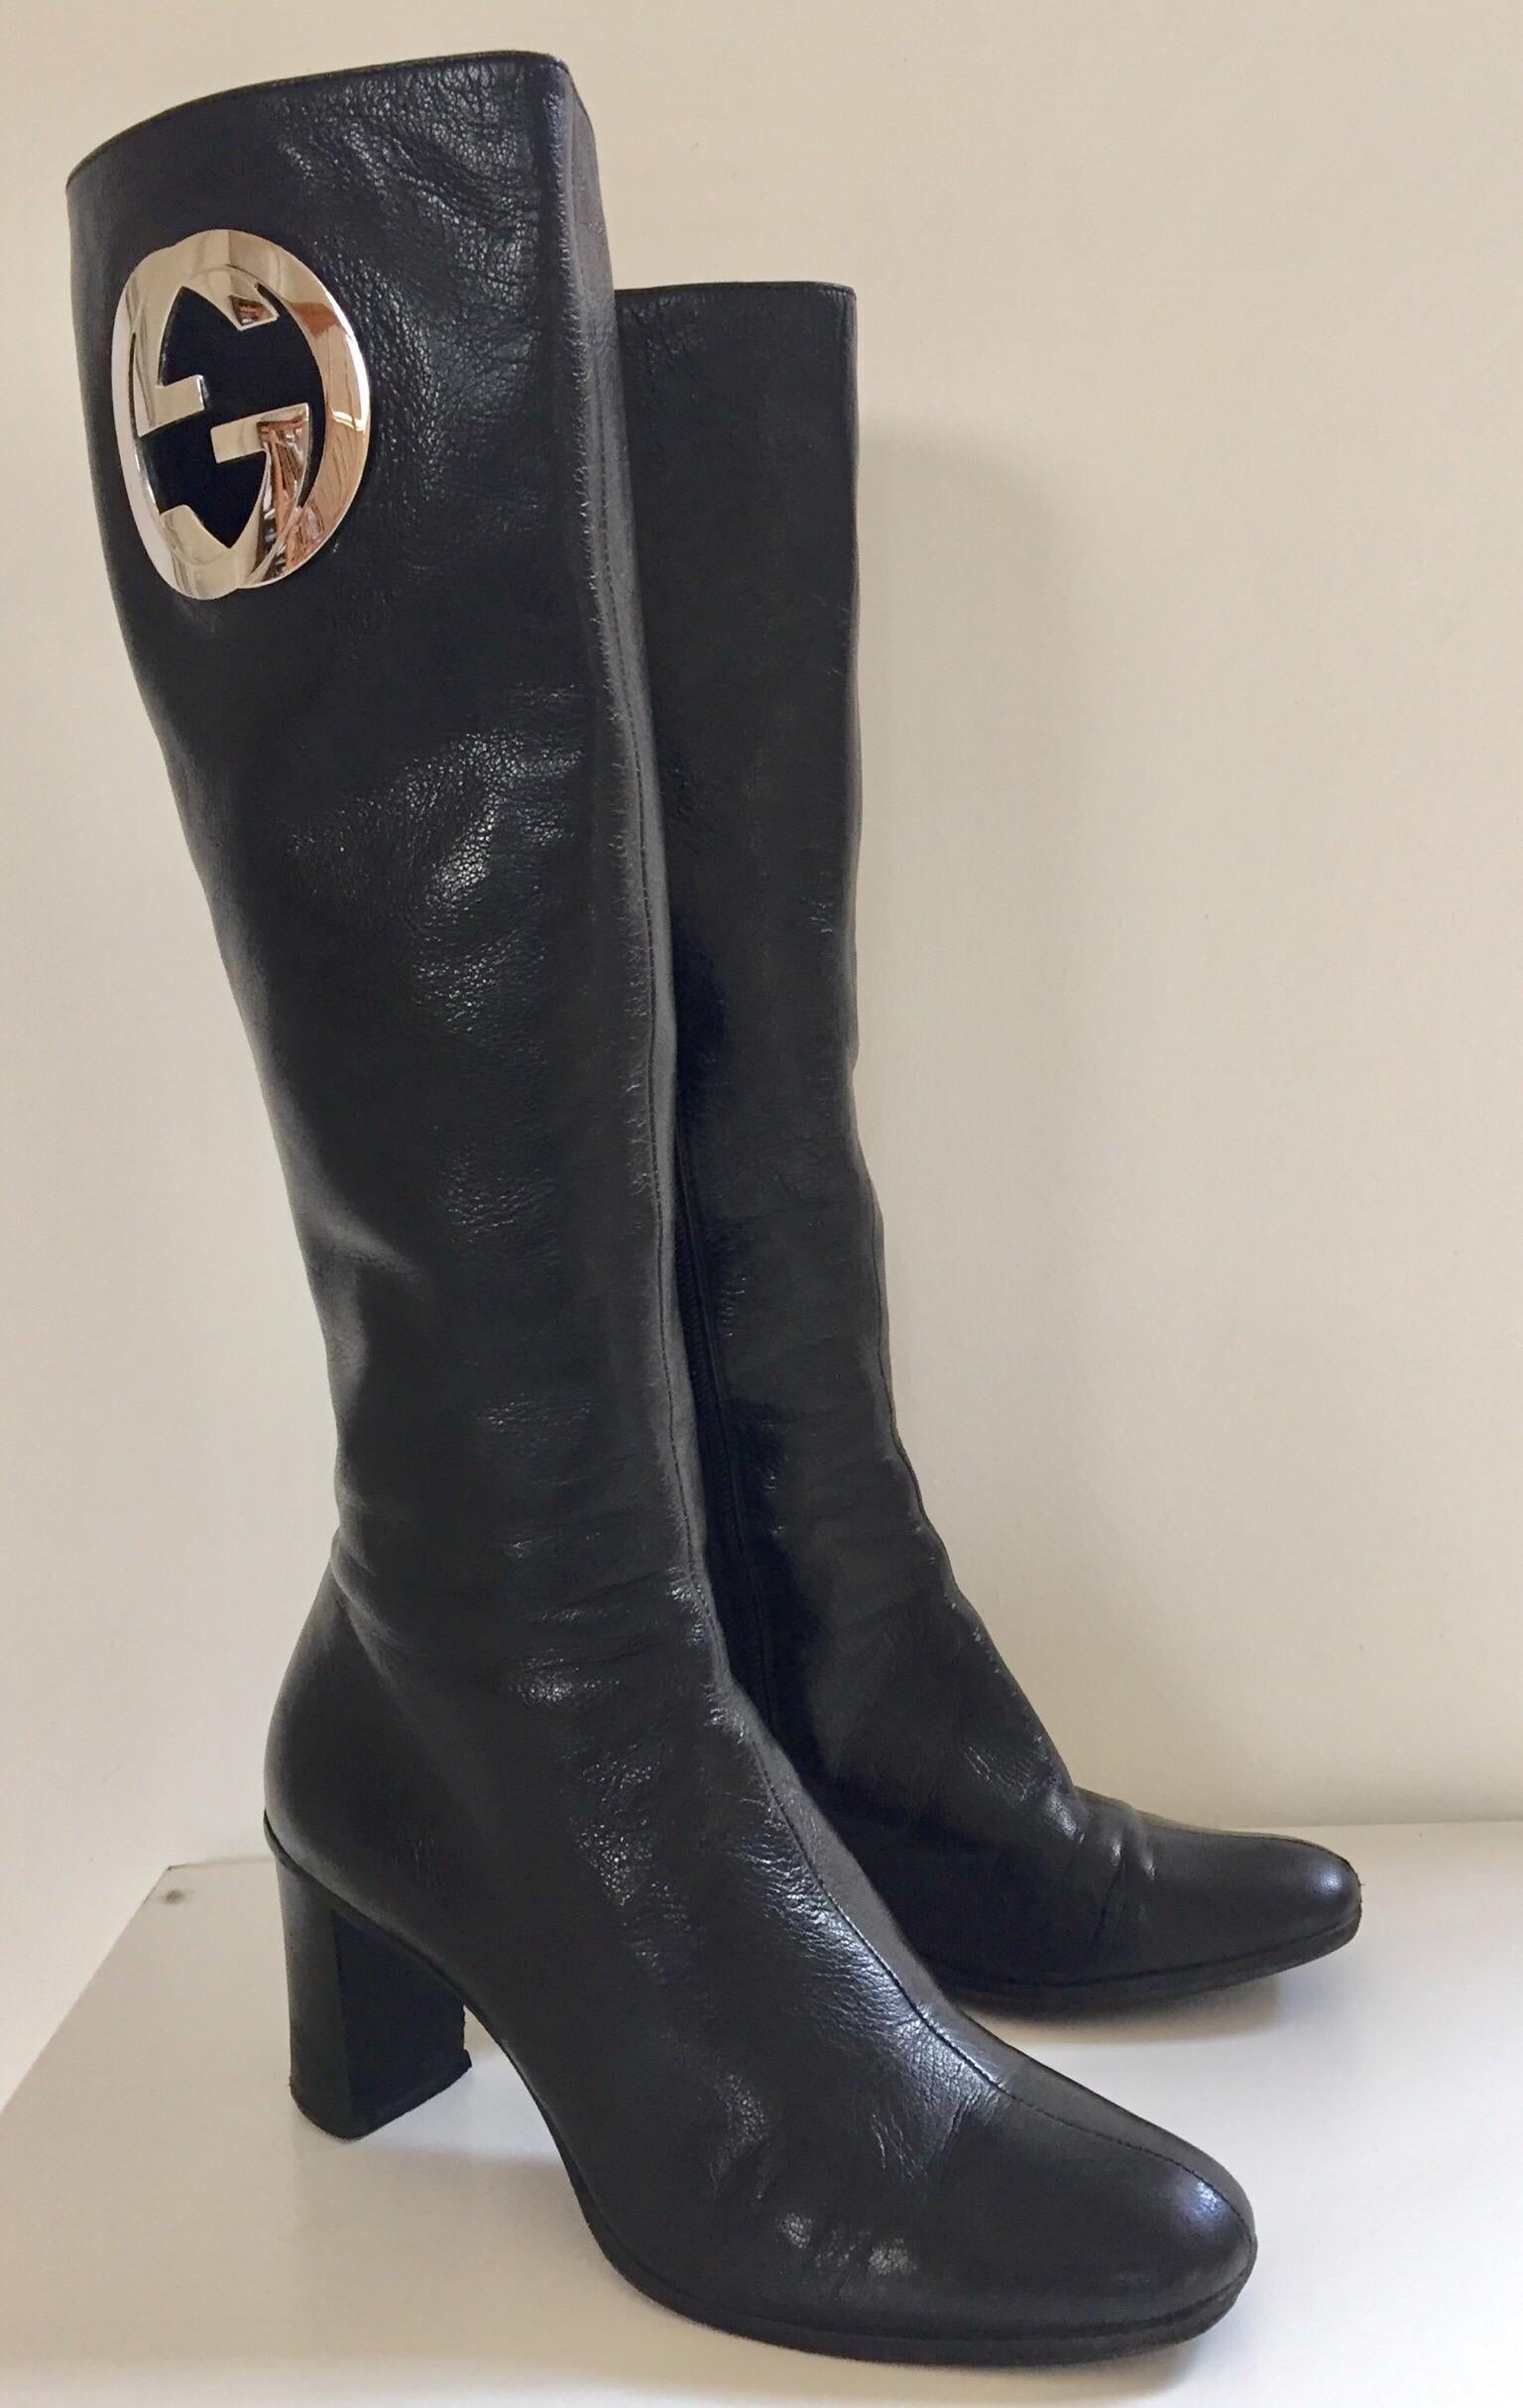 Tom Fords kniehohe Lederstiefel von Gucci, um 1999.
Diese eleganten Gucci-Stiefel im Vintage-Stil sind aus schwarzem, geschmeidigem Lammleder gefertigt und mit einem Blockabsatz, einem seitlichen Reißverschluss und einem auffälligen Monogramm in